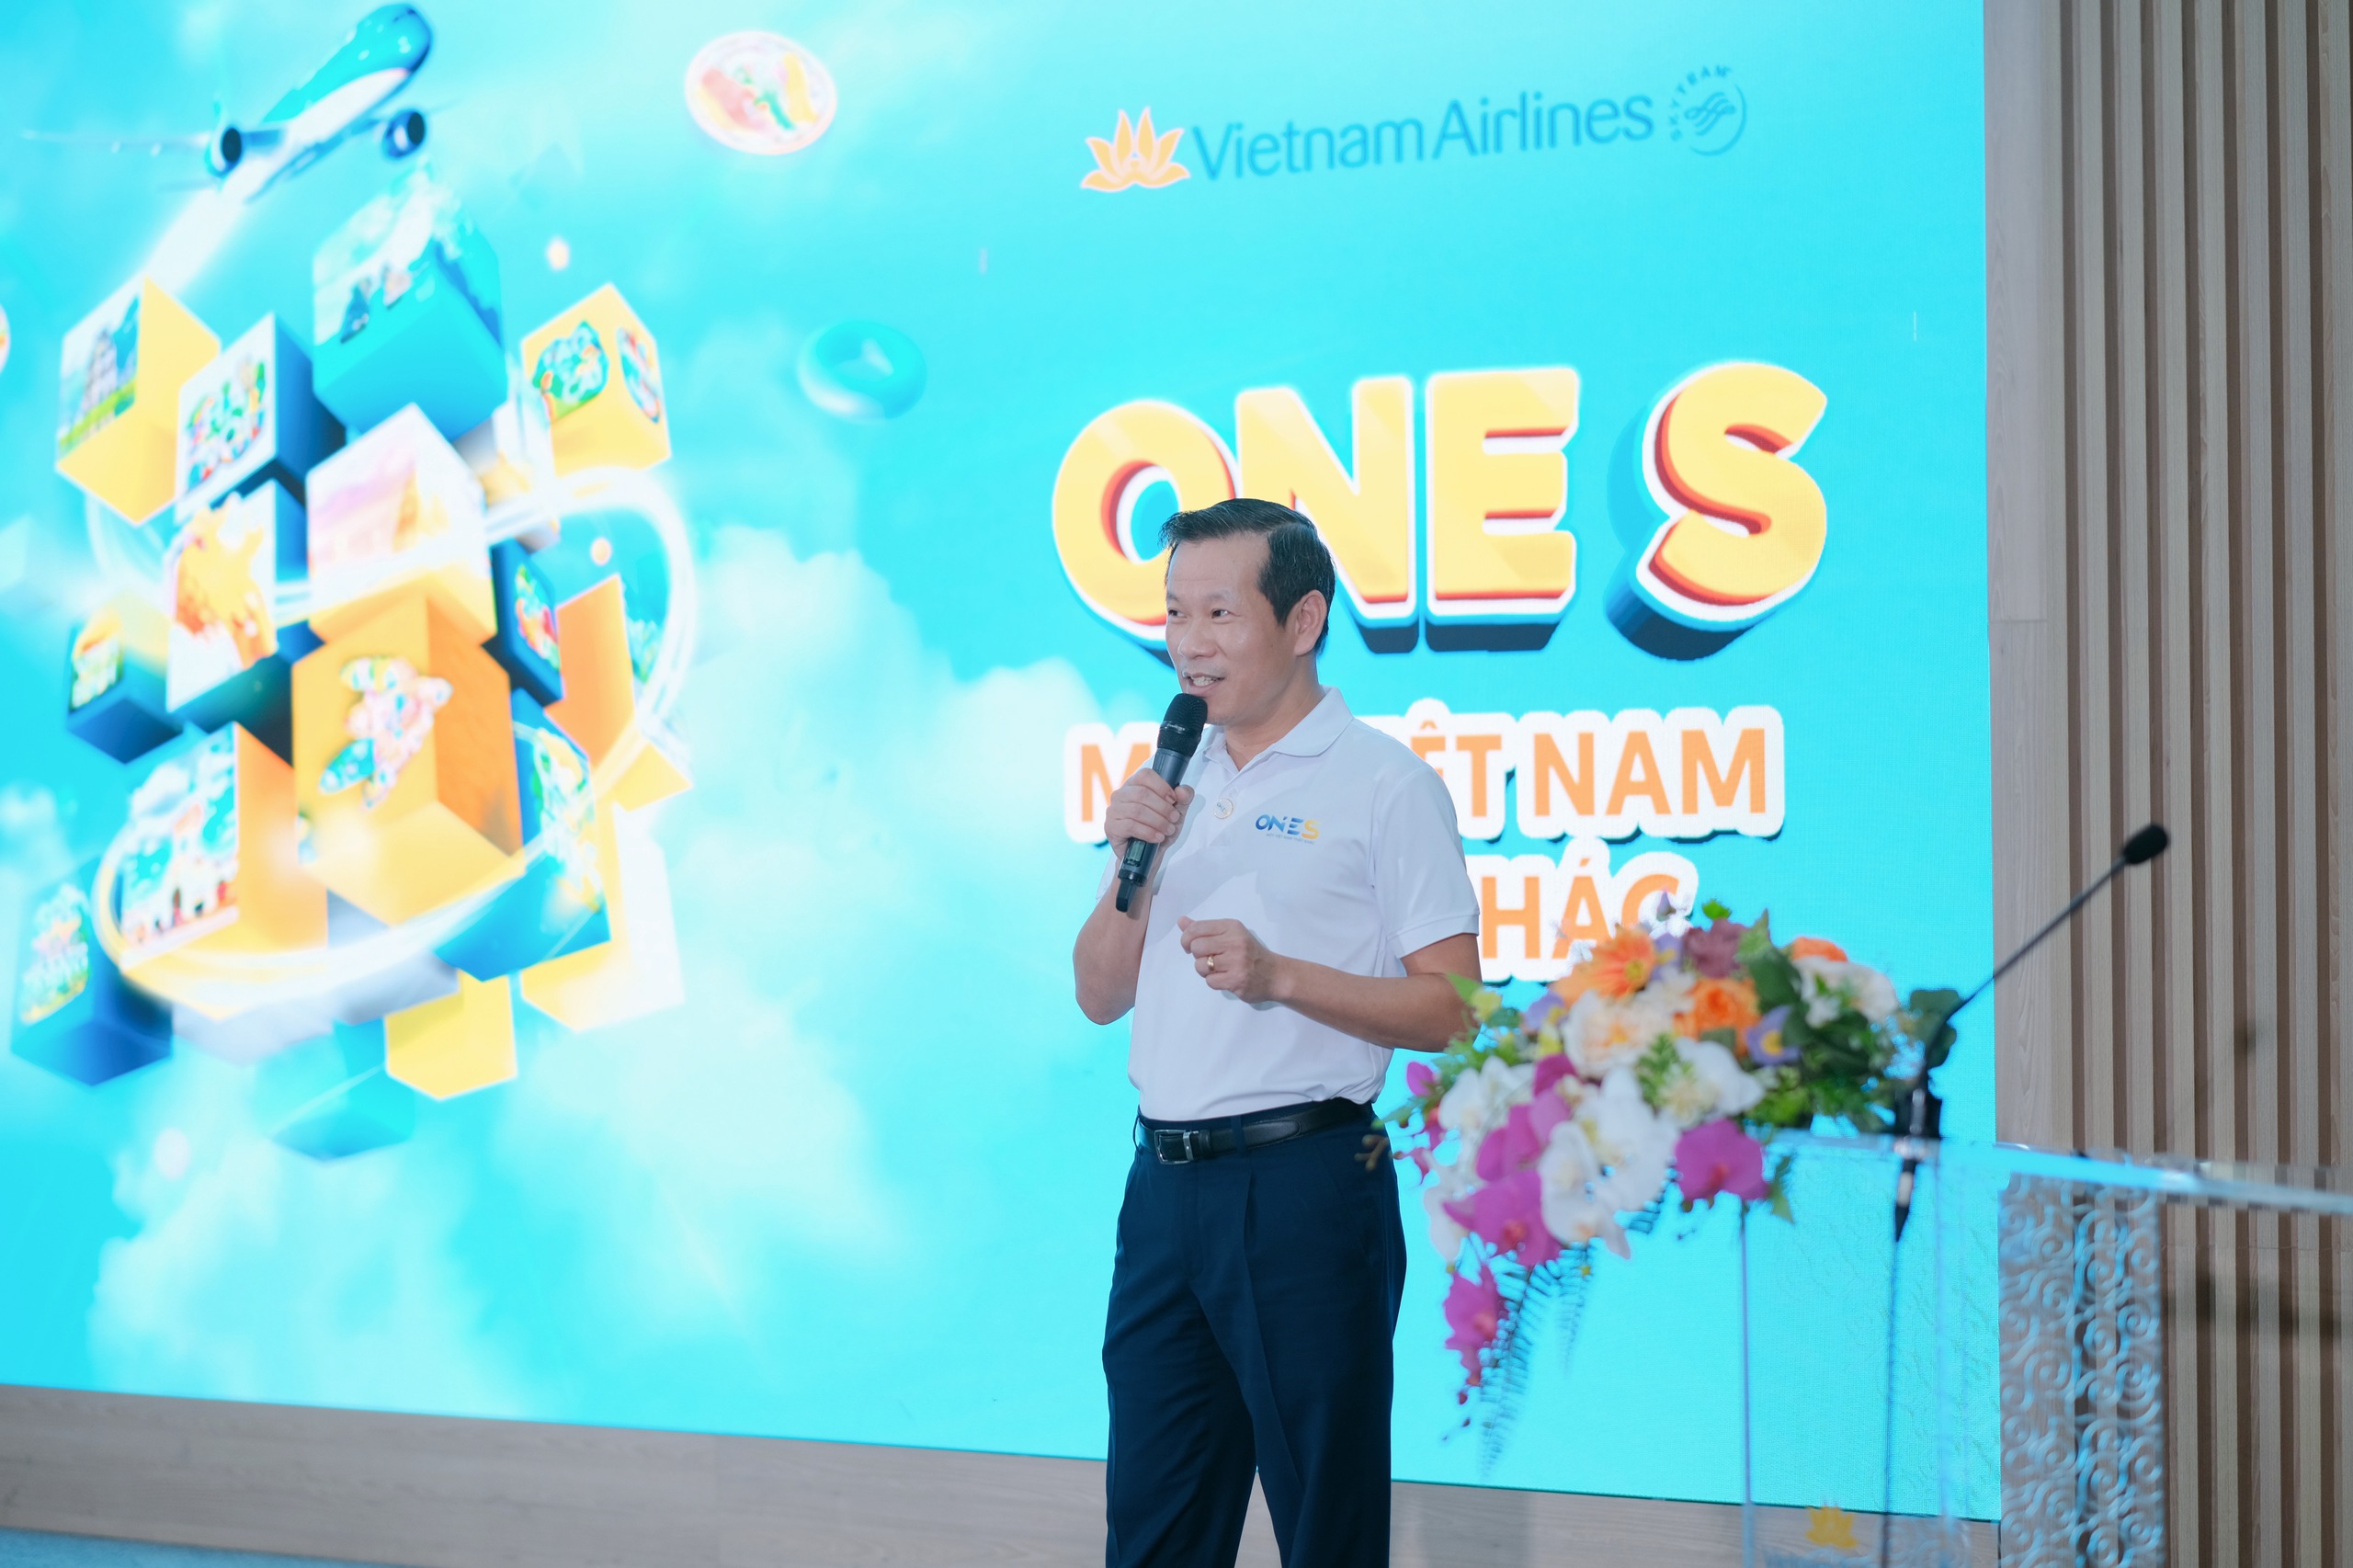 Vietnam Airlines se unió a TV360, VTVCab y Momo para desarrollar el juego interactivo One S - Foto 2.